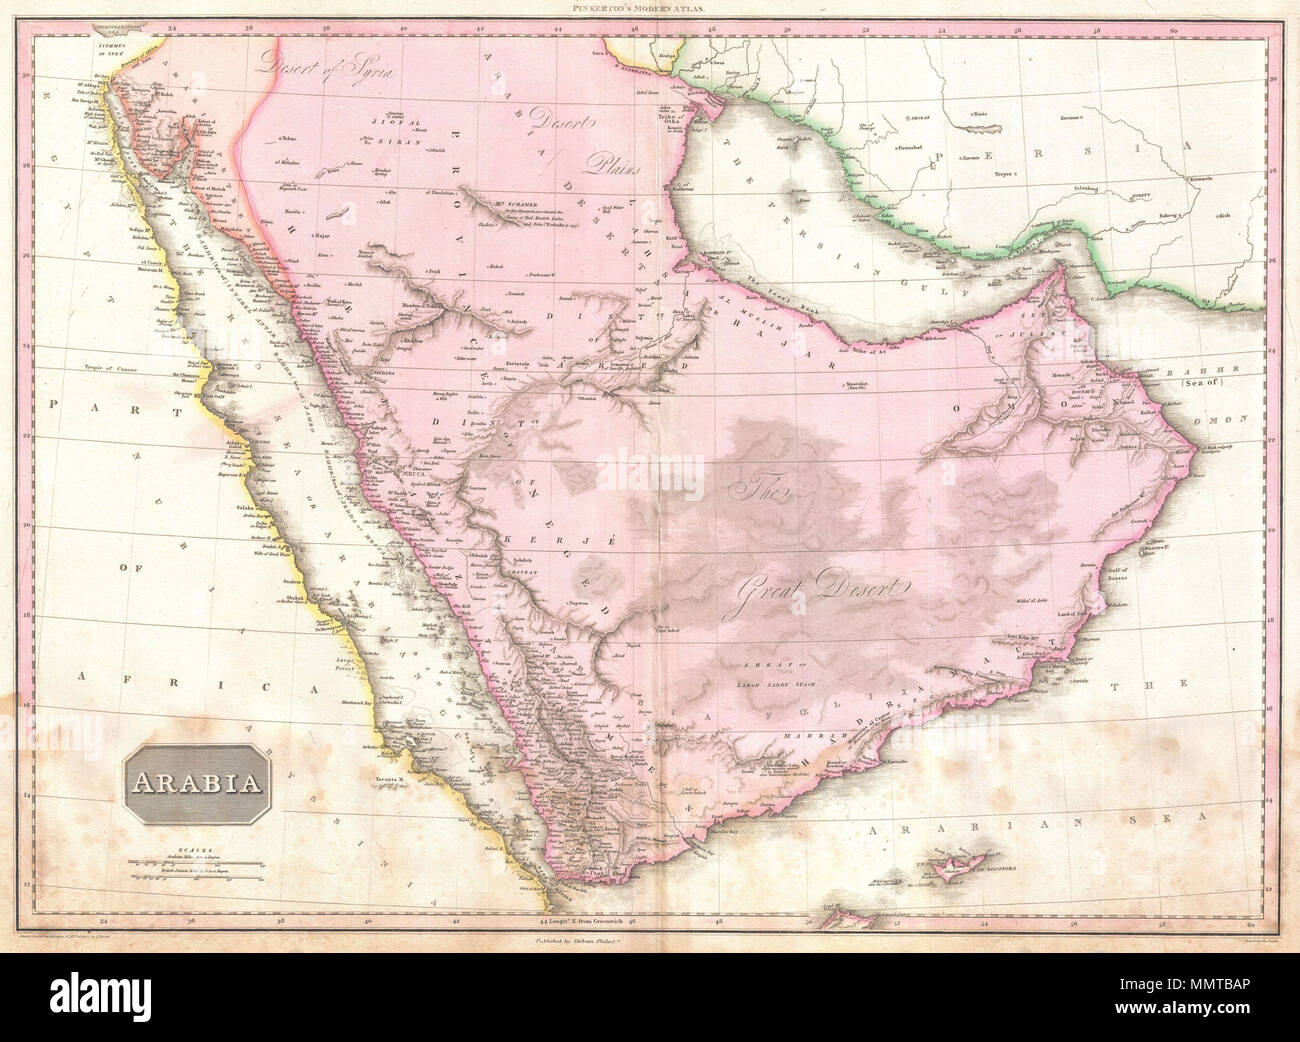 . Inglese: straordinario formato grande mappa di Arabia pubblicato nel 1818 dal cartografo Giovanni Pinkerton. Centrata sul deserto provincia di Neged, questa mappa dettagli tutta la penisola arabica come pure il Mar Rosso e il Golfo Persico e le parti adiacenti dell Africa e la Persia. Copre il giorno moderno paesi dell Arabia Saudita, Yemen, Oman, Emirati arabi uniti, Qatar e Kuwait. Pinkerton offre dettagli straordinari in tutto rilevando sia fisici e i dettagli di politici. Quando questa mappa è stata realizzata all'interno di Arabia era poco conosciuto in ambienti europei. La maggior parte del materiale cartografico utilizzato per compo Foto Stock